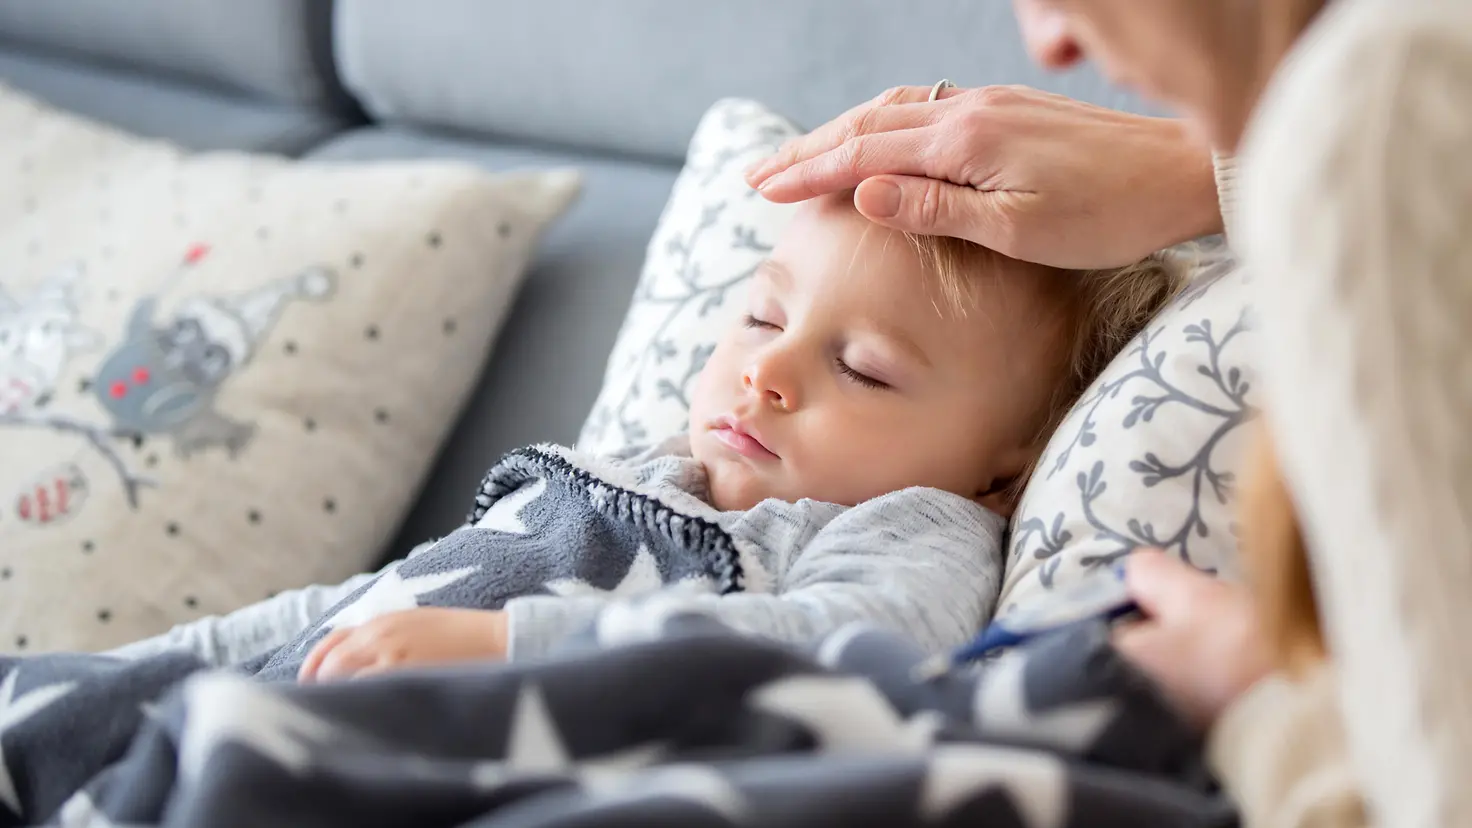 Zu sehen auf diesem Bild ist ein auf der Couch liegendes Kind mit geschlossenen Augen. Die Hand der Mutter liegt auf der Stirn des Kindes.